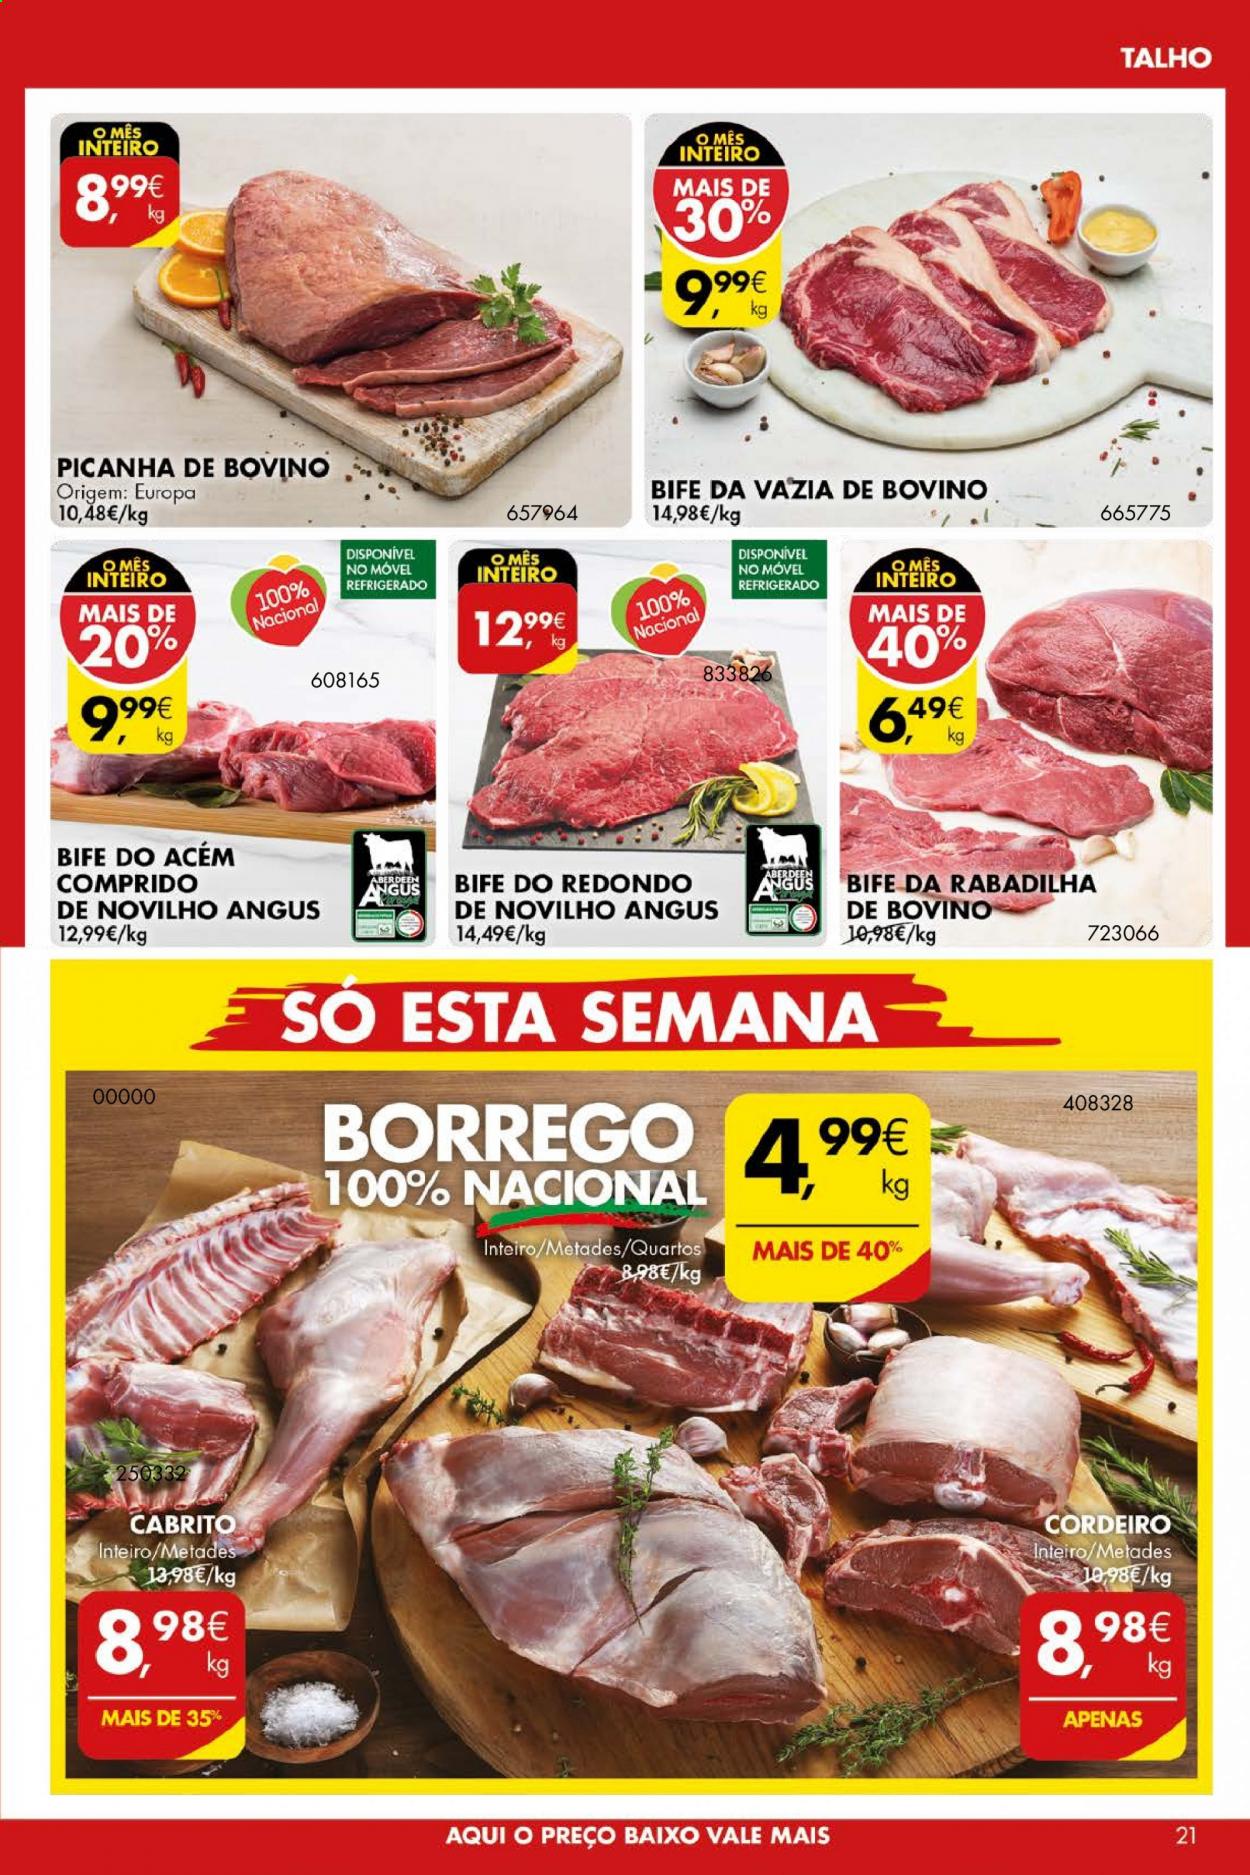 thumbnail - Folheto Pingo Doce - 30.3.2021 - 5.4.2021 - Produtos em promoção - picanha, bife, vazia de bovino, carne de novilho, Angus, cordeiro, cabrito. Página 21.